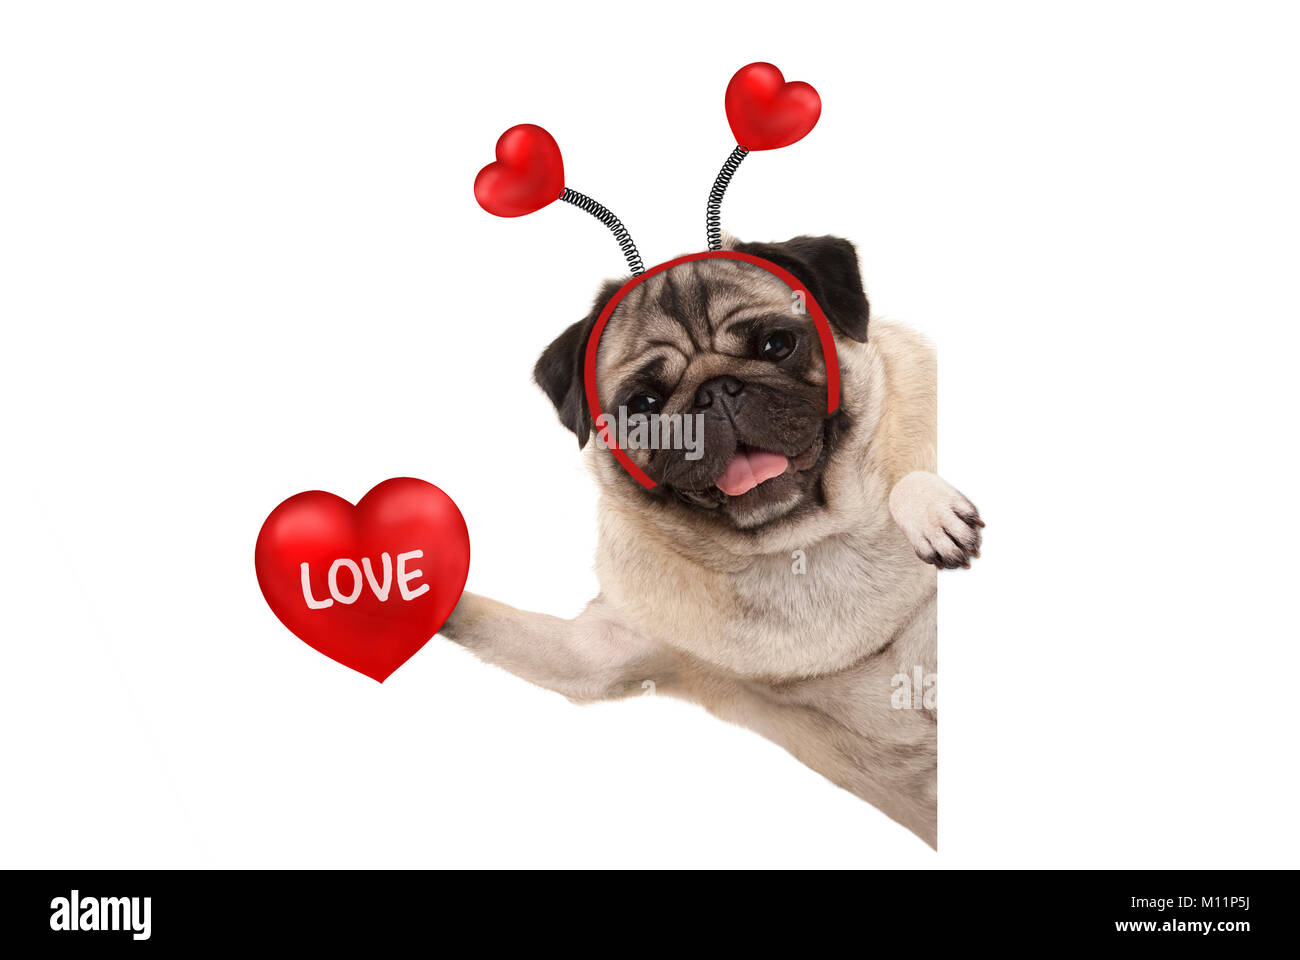 Lächelnd Valentinstag mops Hund halten roten Herzen mit text Liebe, auf weißem Hintergrund Stockfoto